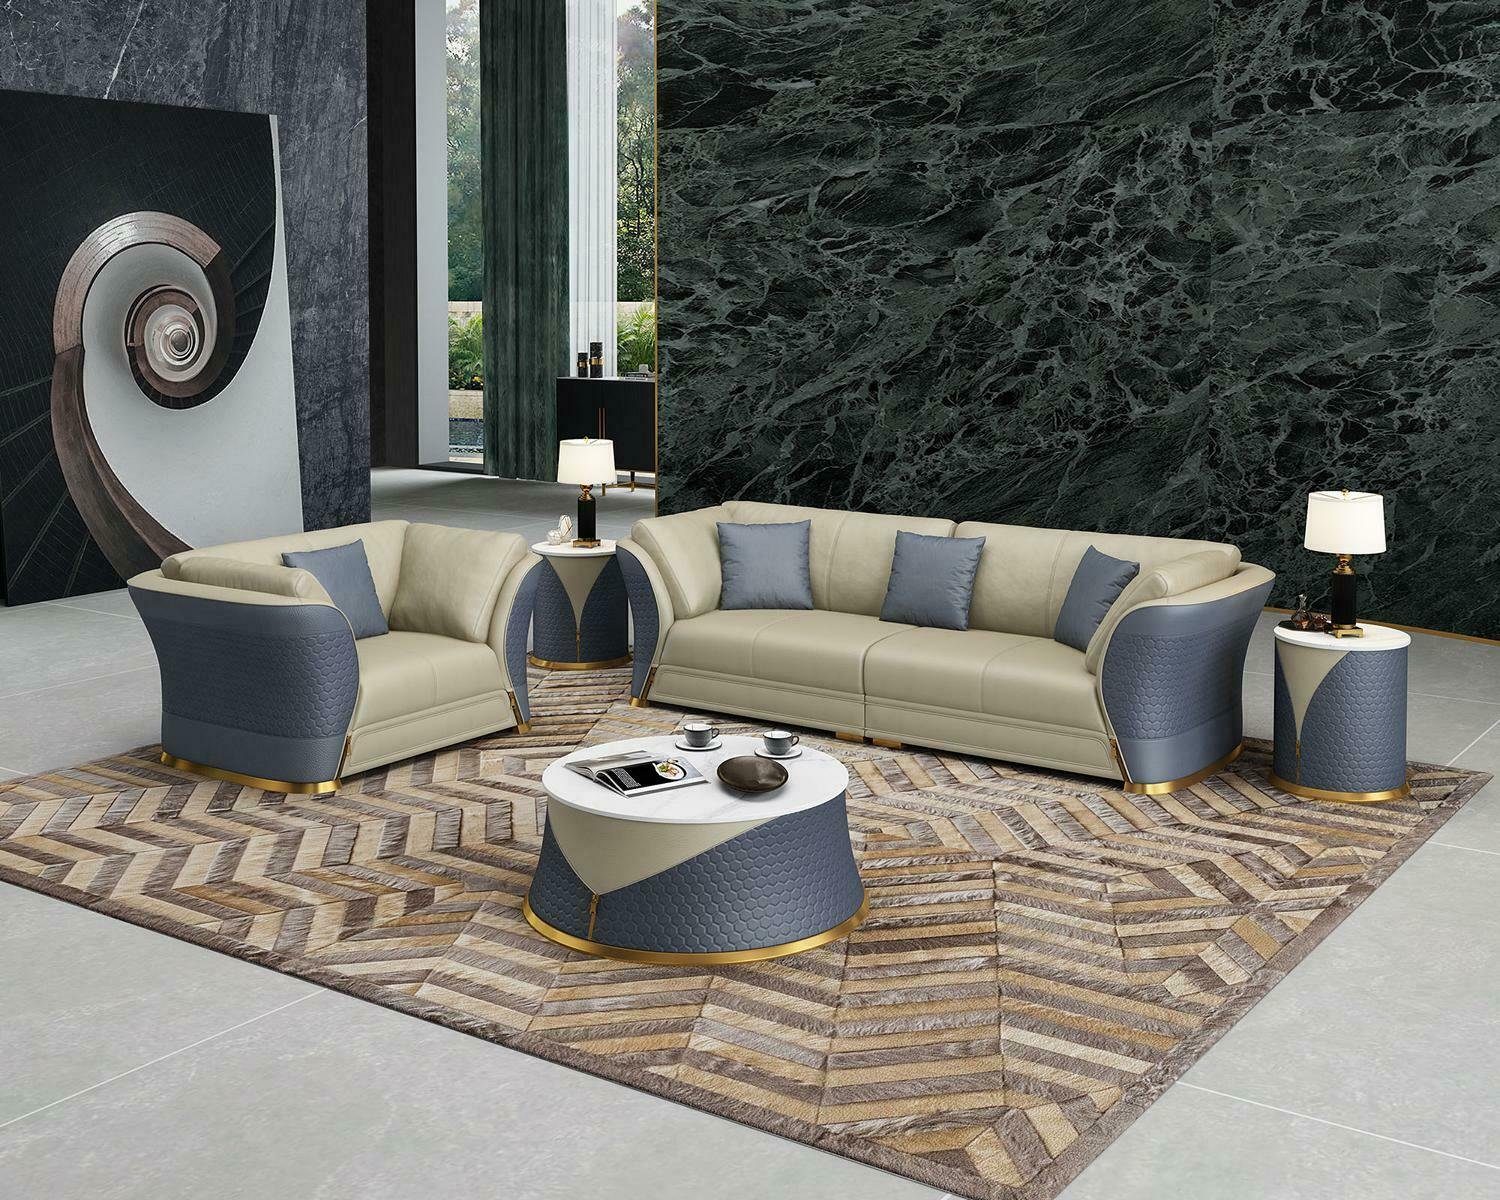 JVmoebel Sofa Moderne Sofagarnitur 3+1 Sitzer Polstermöbel Couchen Neu, Made in Europe Blau/Beige